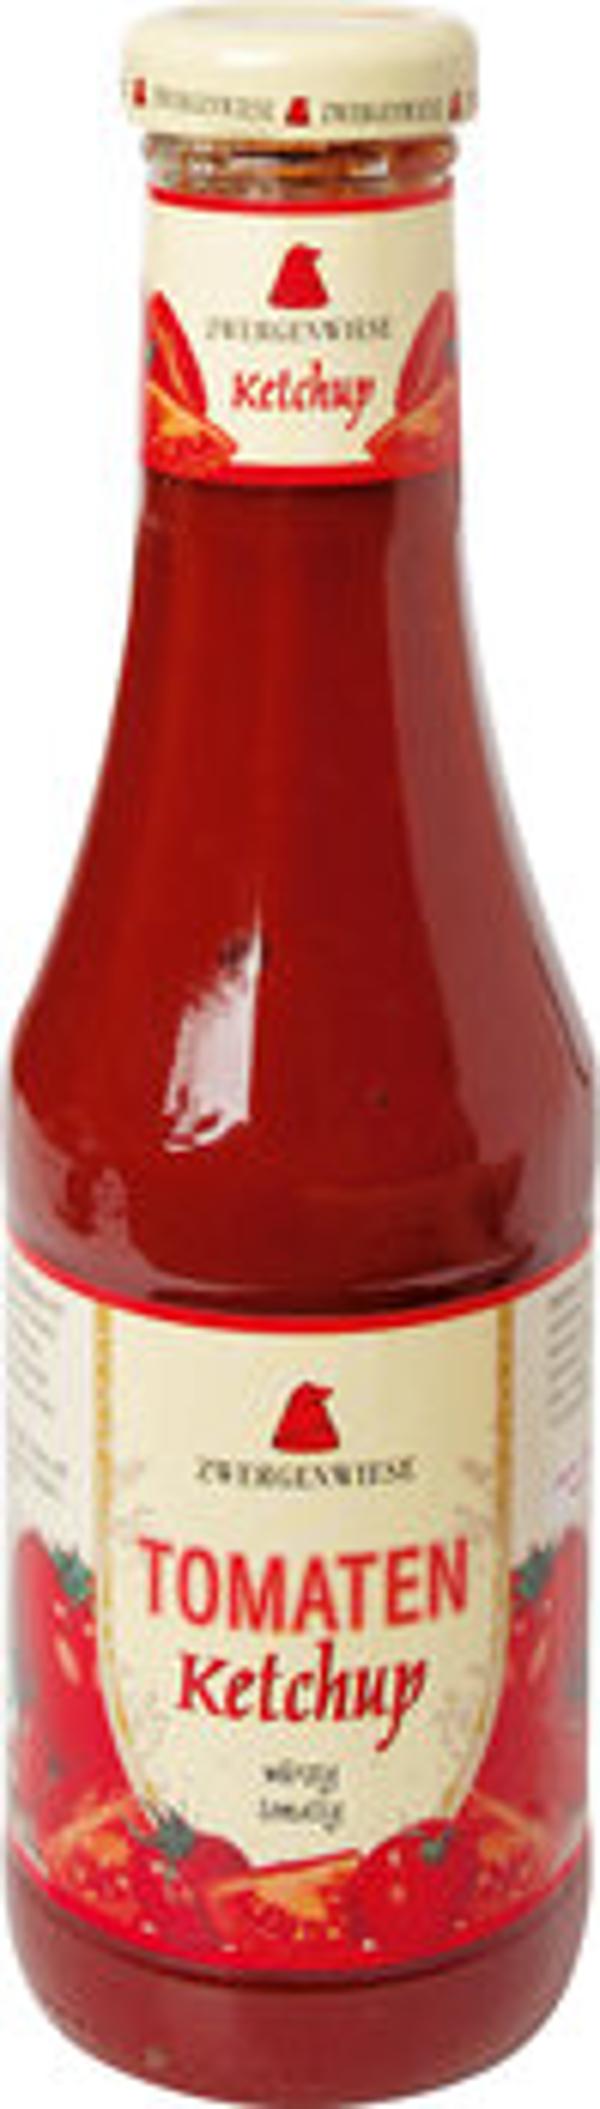 Produktfoto zu Zwergenwiese Tomatenketchup 500ml